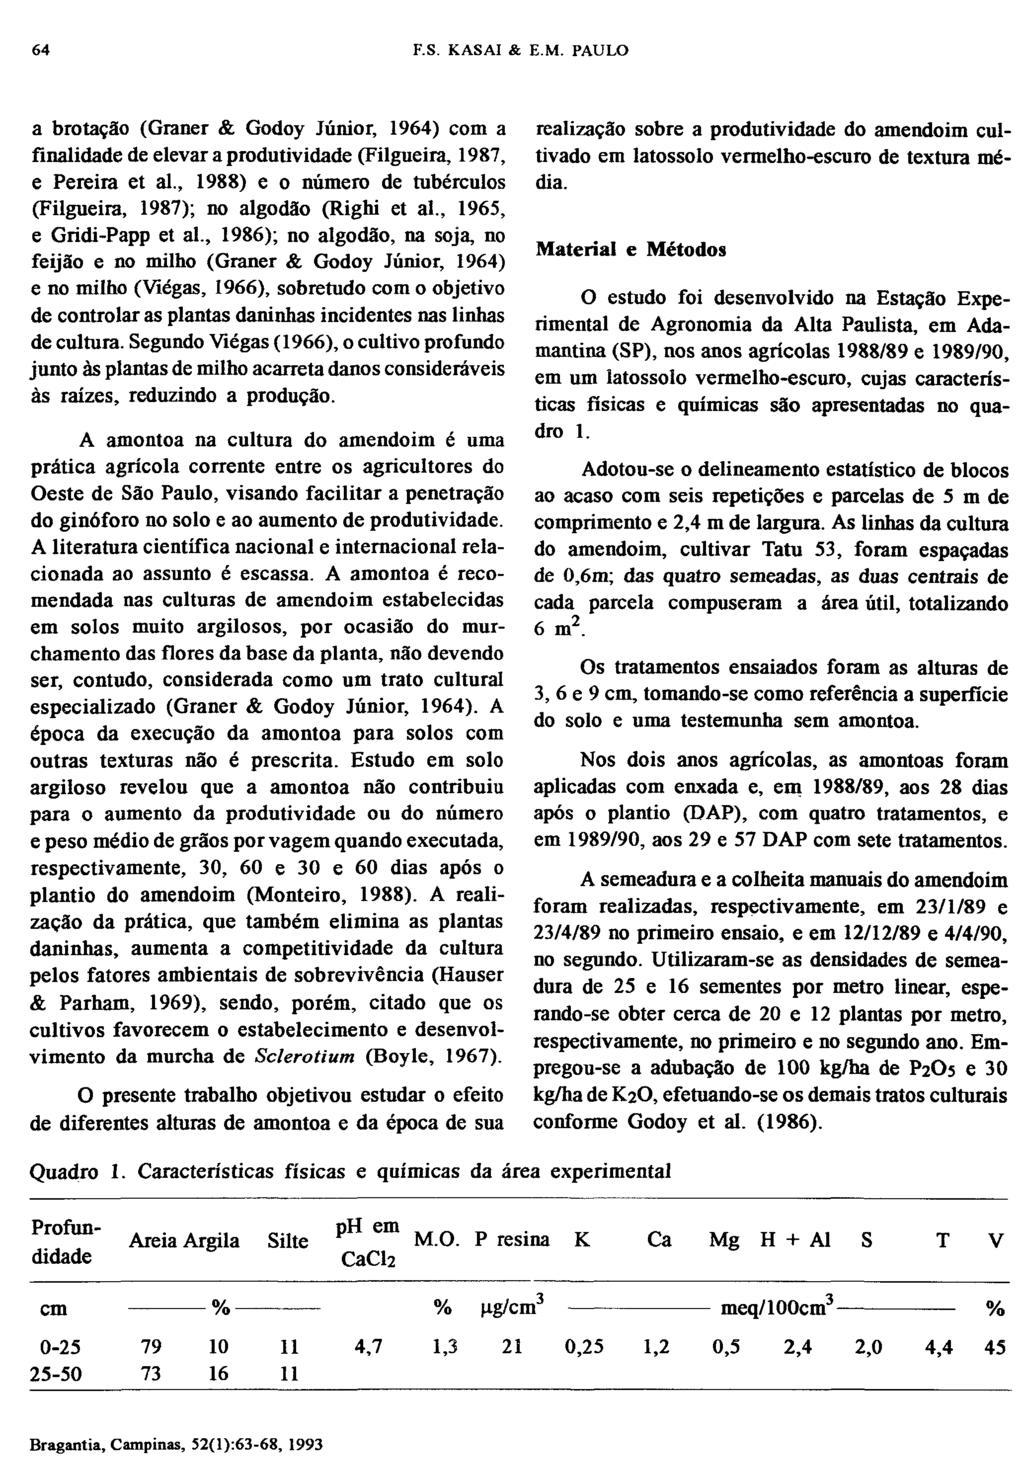 a brotação (Graner & Godoy Júnior, 1964) com a finalidade de elevar a produtividade (Filgueira, 1987, e Pereira et ai., 1988) e o número de tubérculos (Filgueira, 1987); no algodão (Righi et ai.